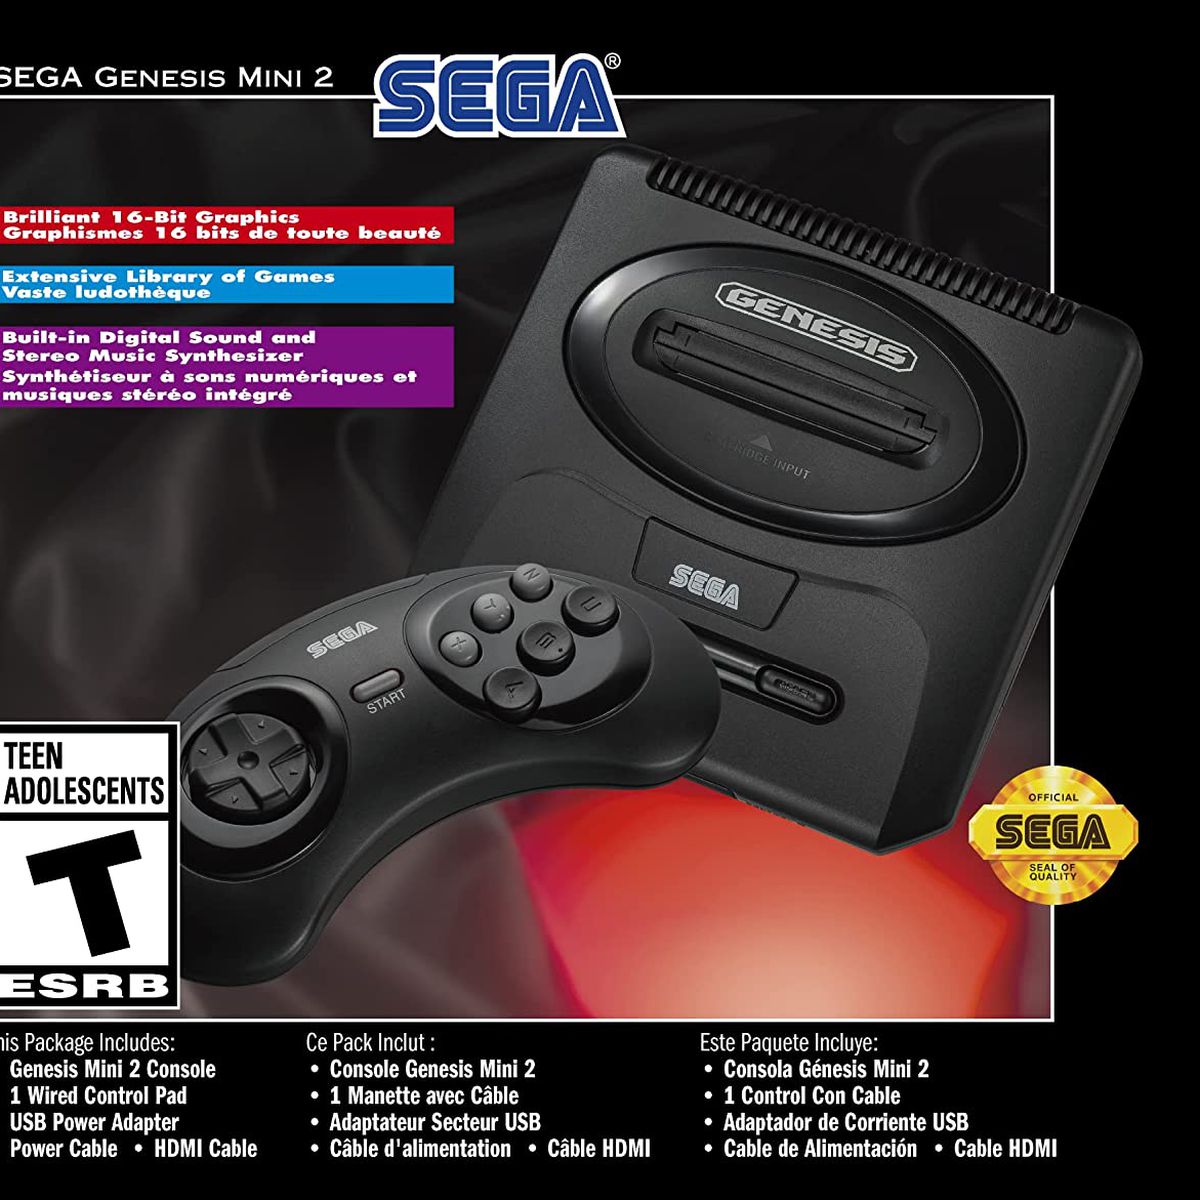 Sega Genesis Mini 2 の製品パッケージ